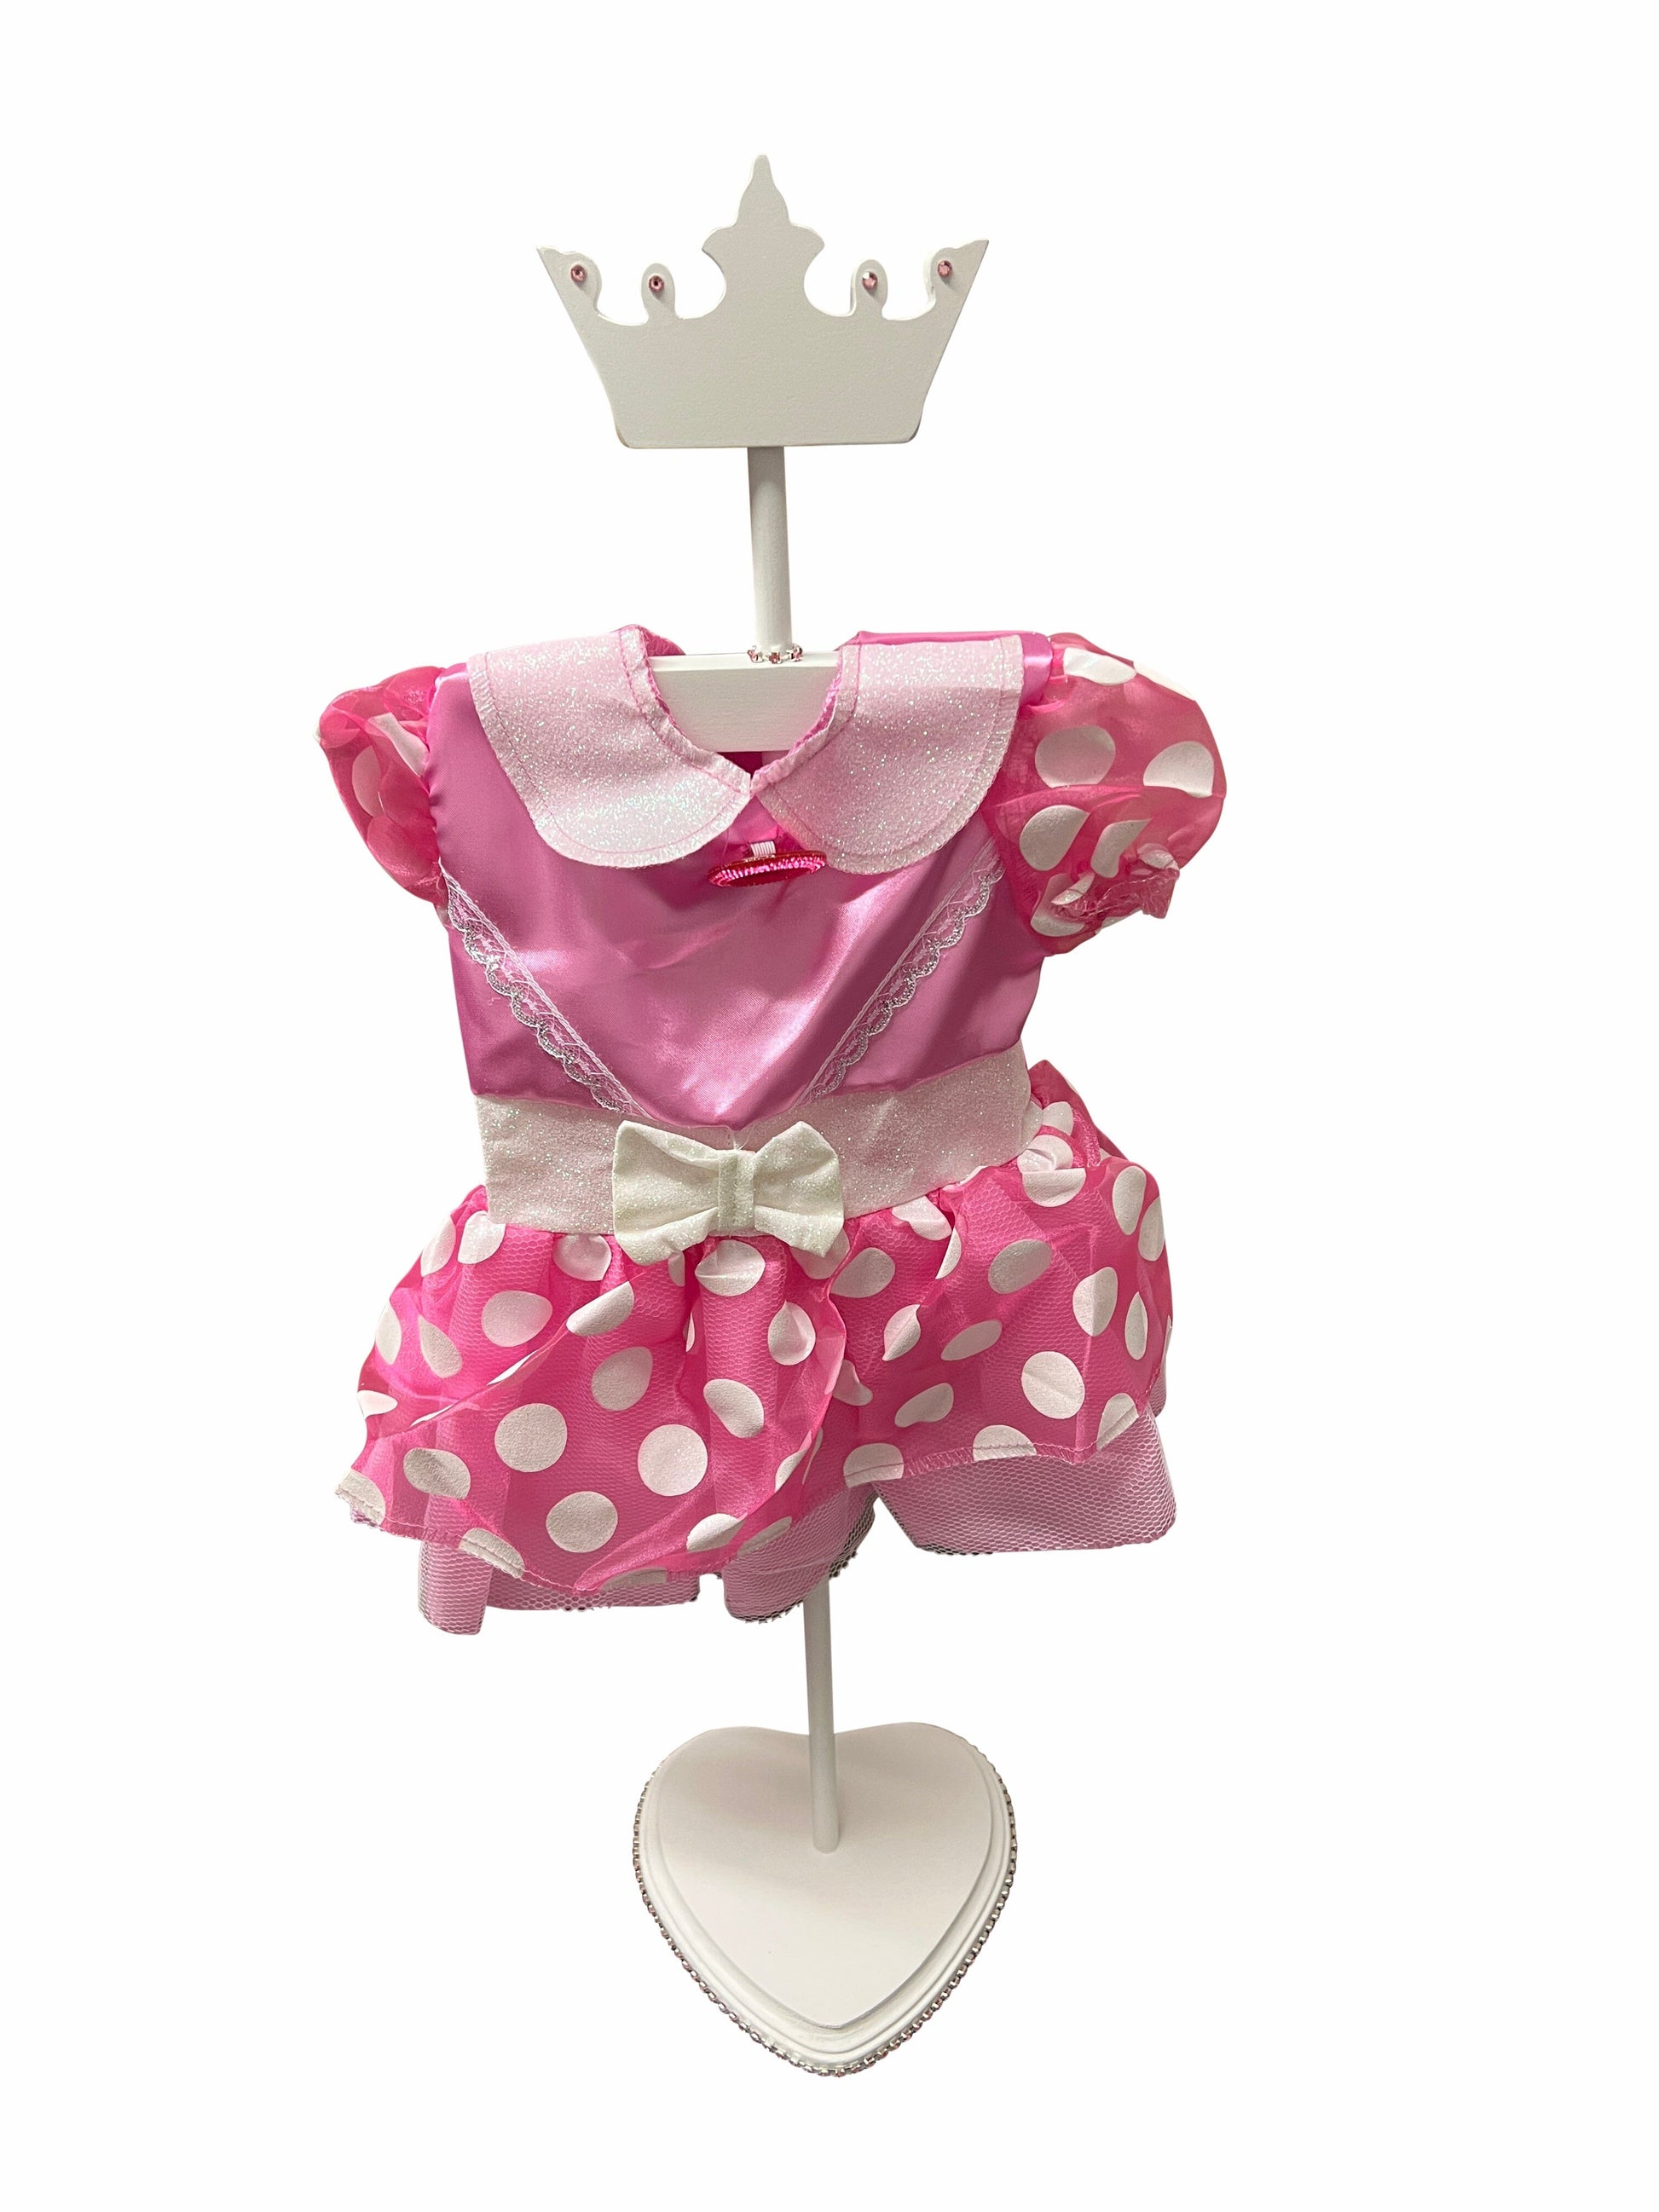 Flower Baby Shower Centerpiece - Dress Hanger Apparel & Accessories lumberlabusa 